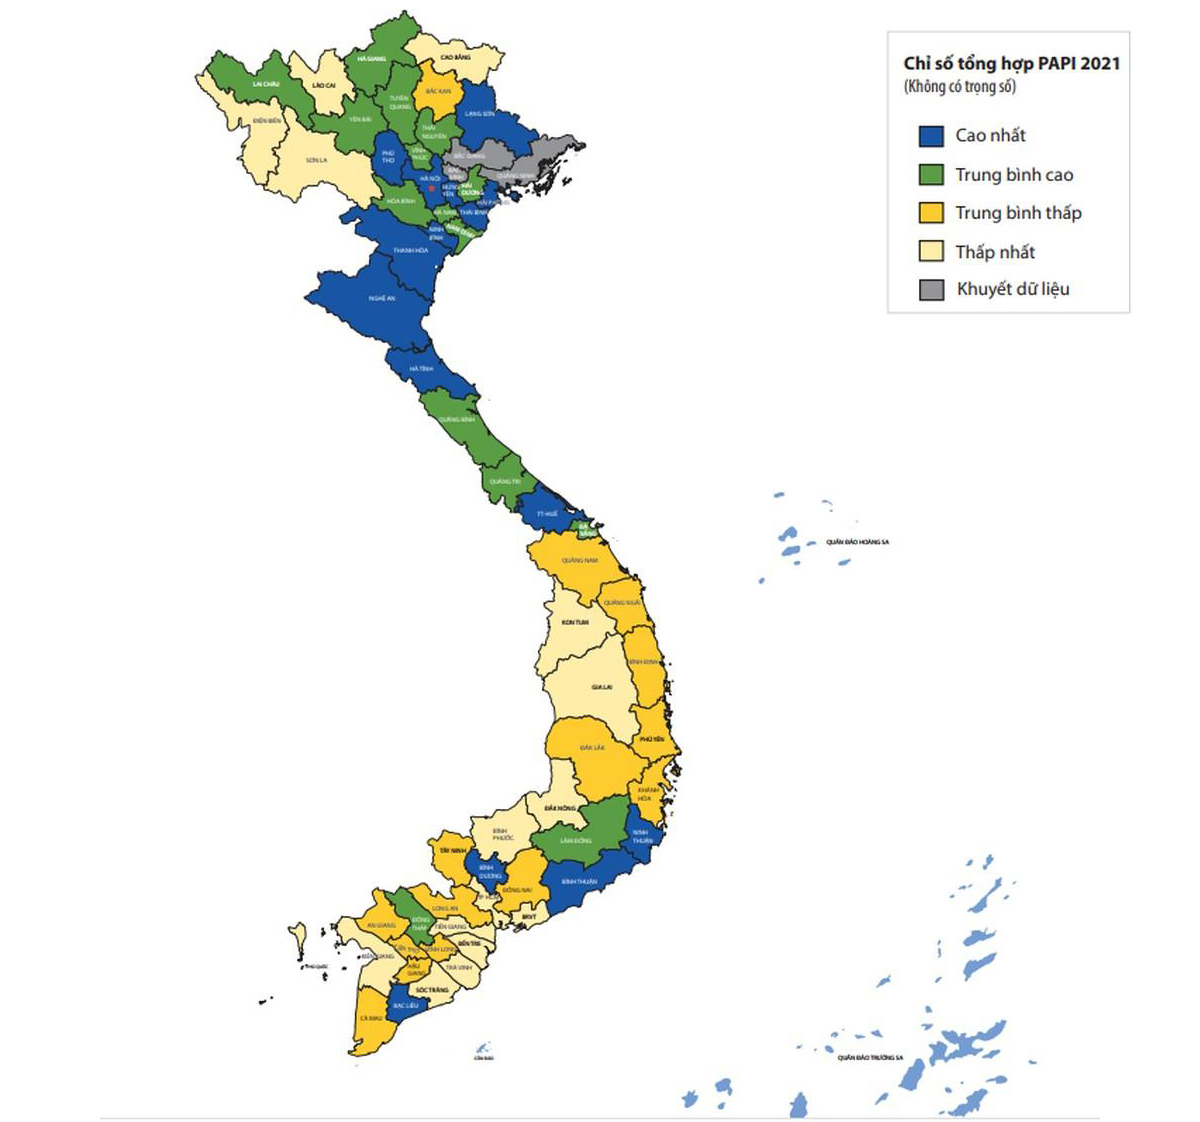 Bản đồ hiệu quả quản trị hành chính công cấp tỉnh năm 2021, Nghệ An thuộc nhóm cao nhất.